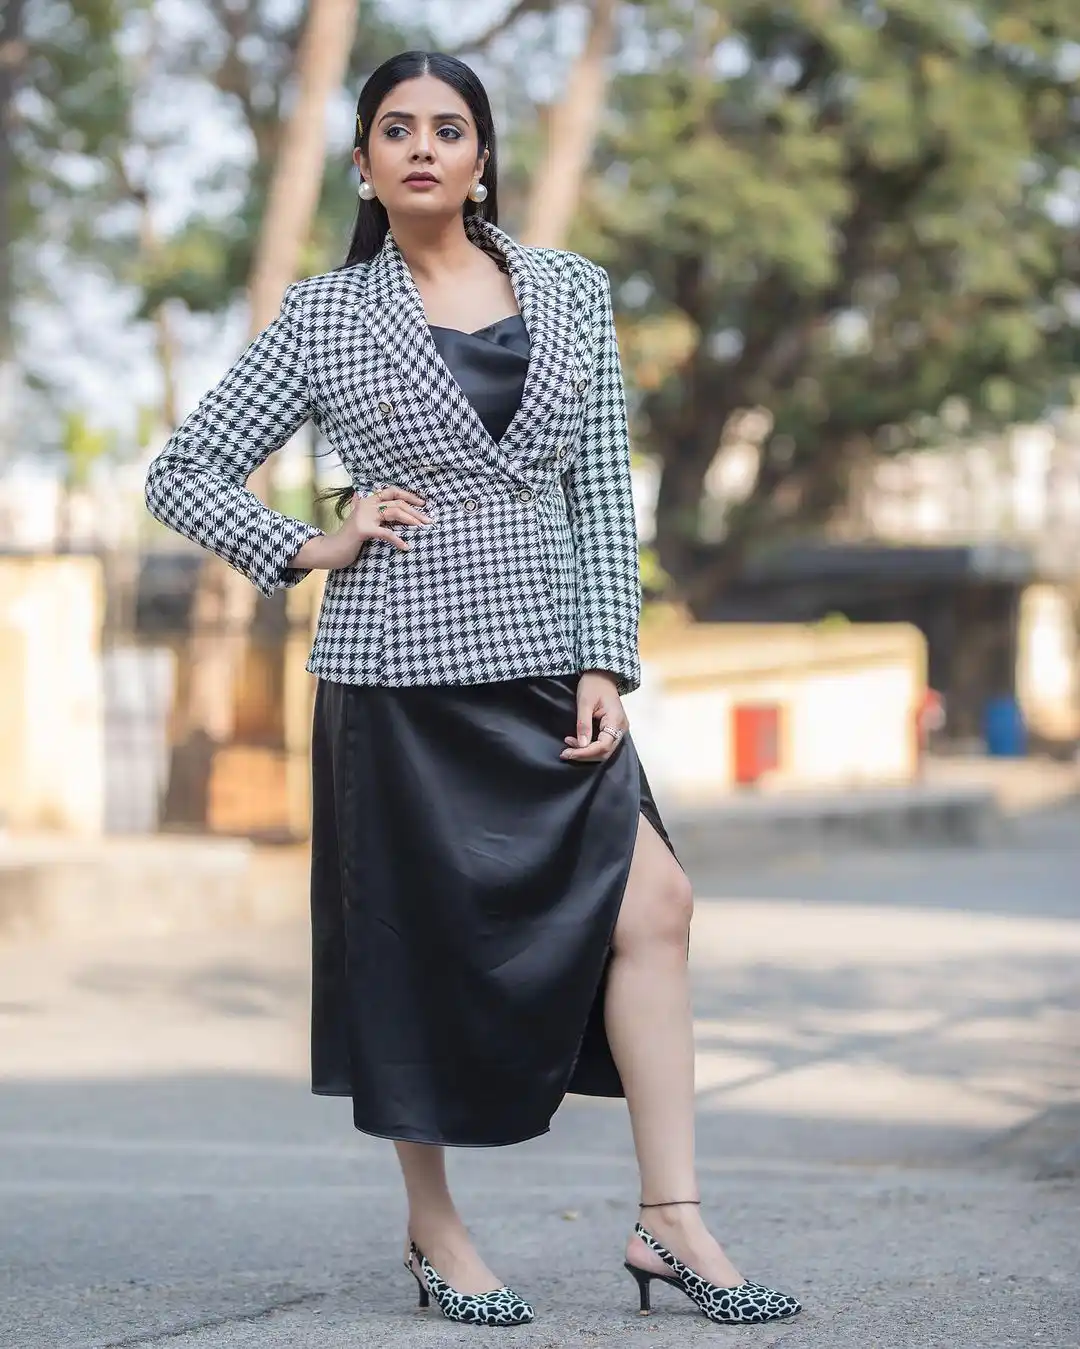 Sreemukhi trendy looks in long skirt